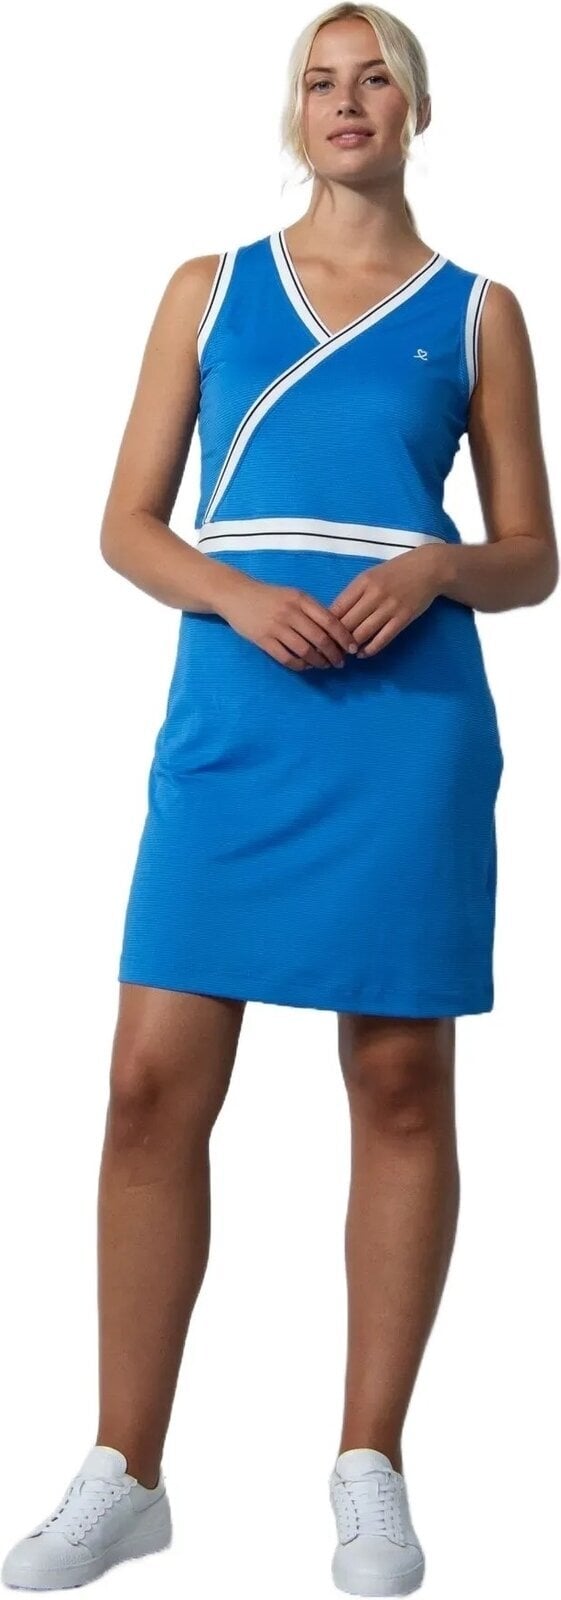 Skirt / Dress Daily Sports Kaiya Dress Cosmic Blue M